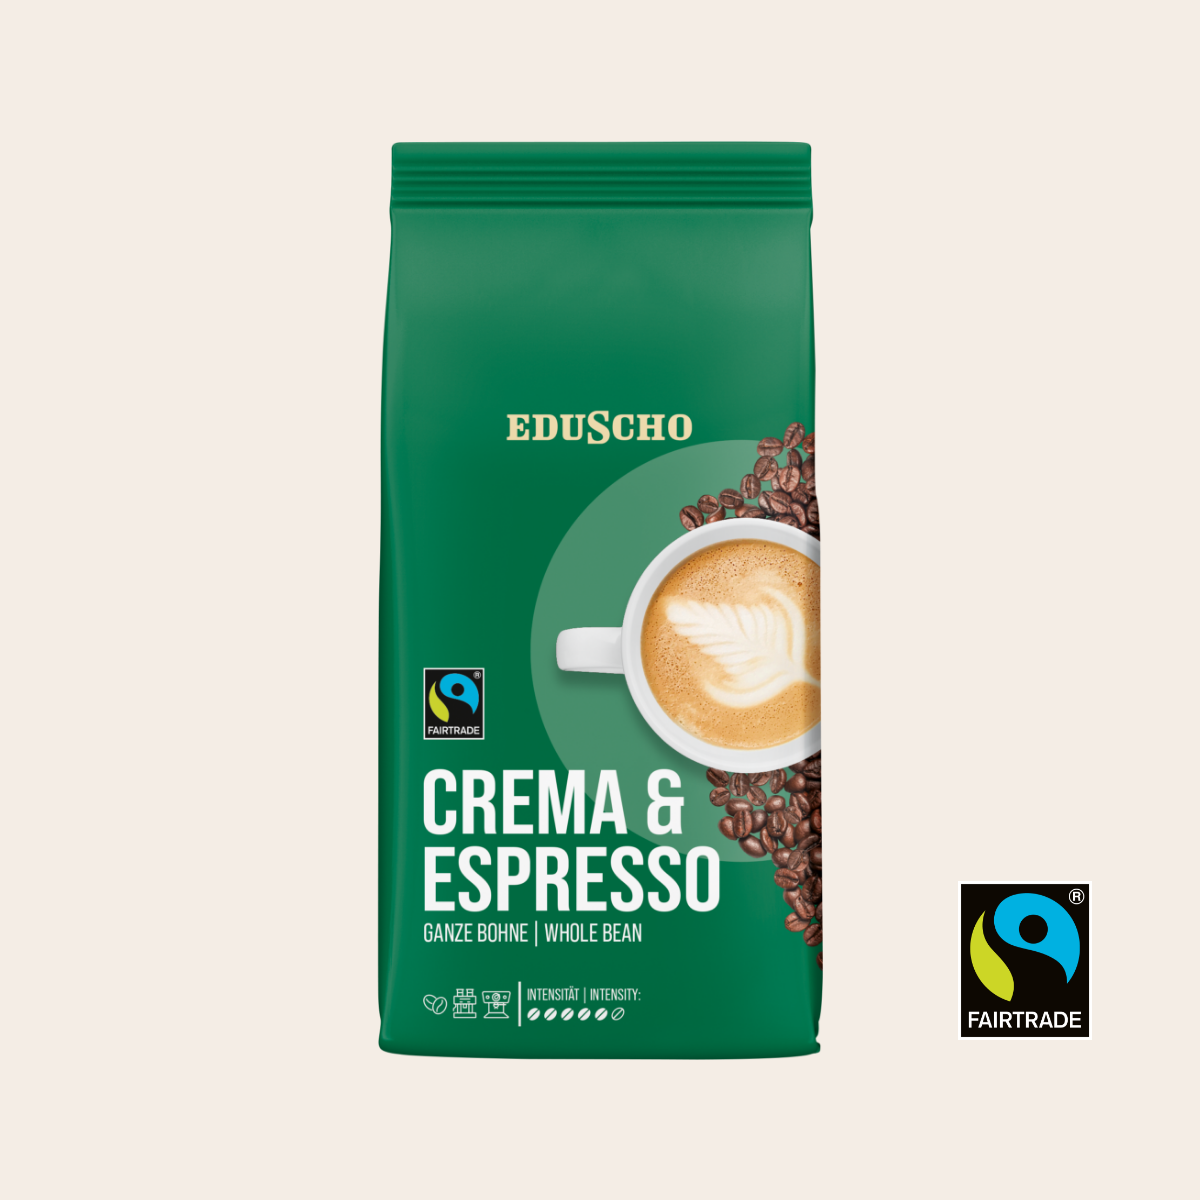 EDUSCHO Crema & Espresso, Fairtrade, 1.000g